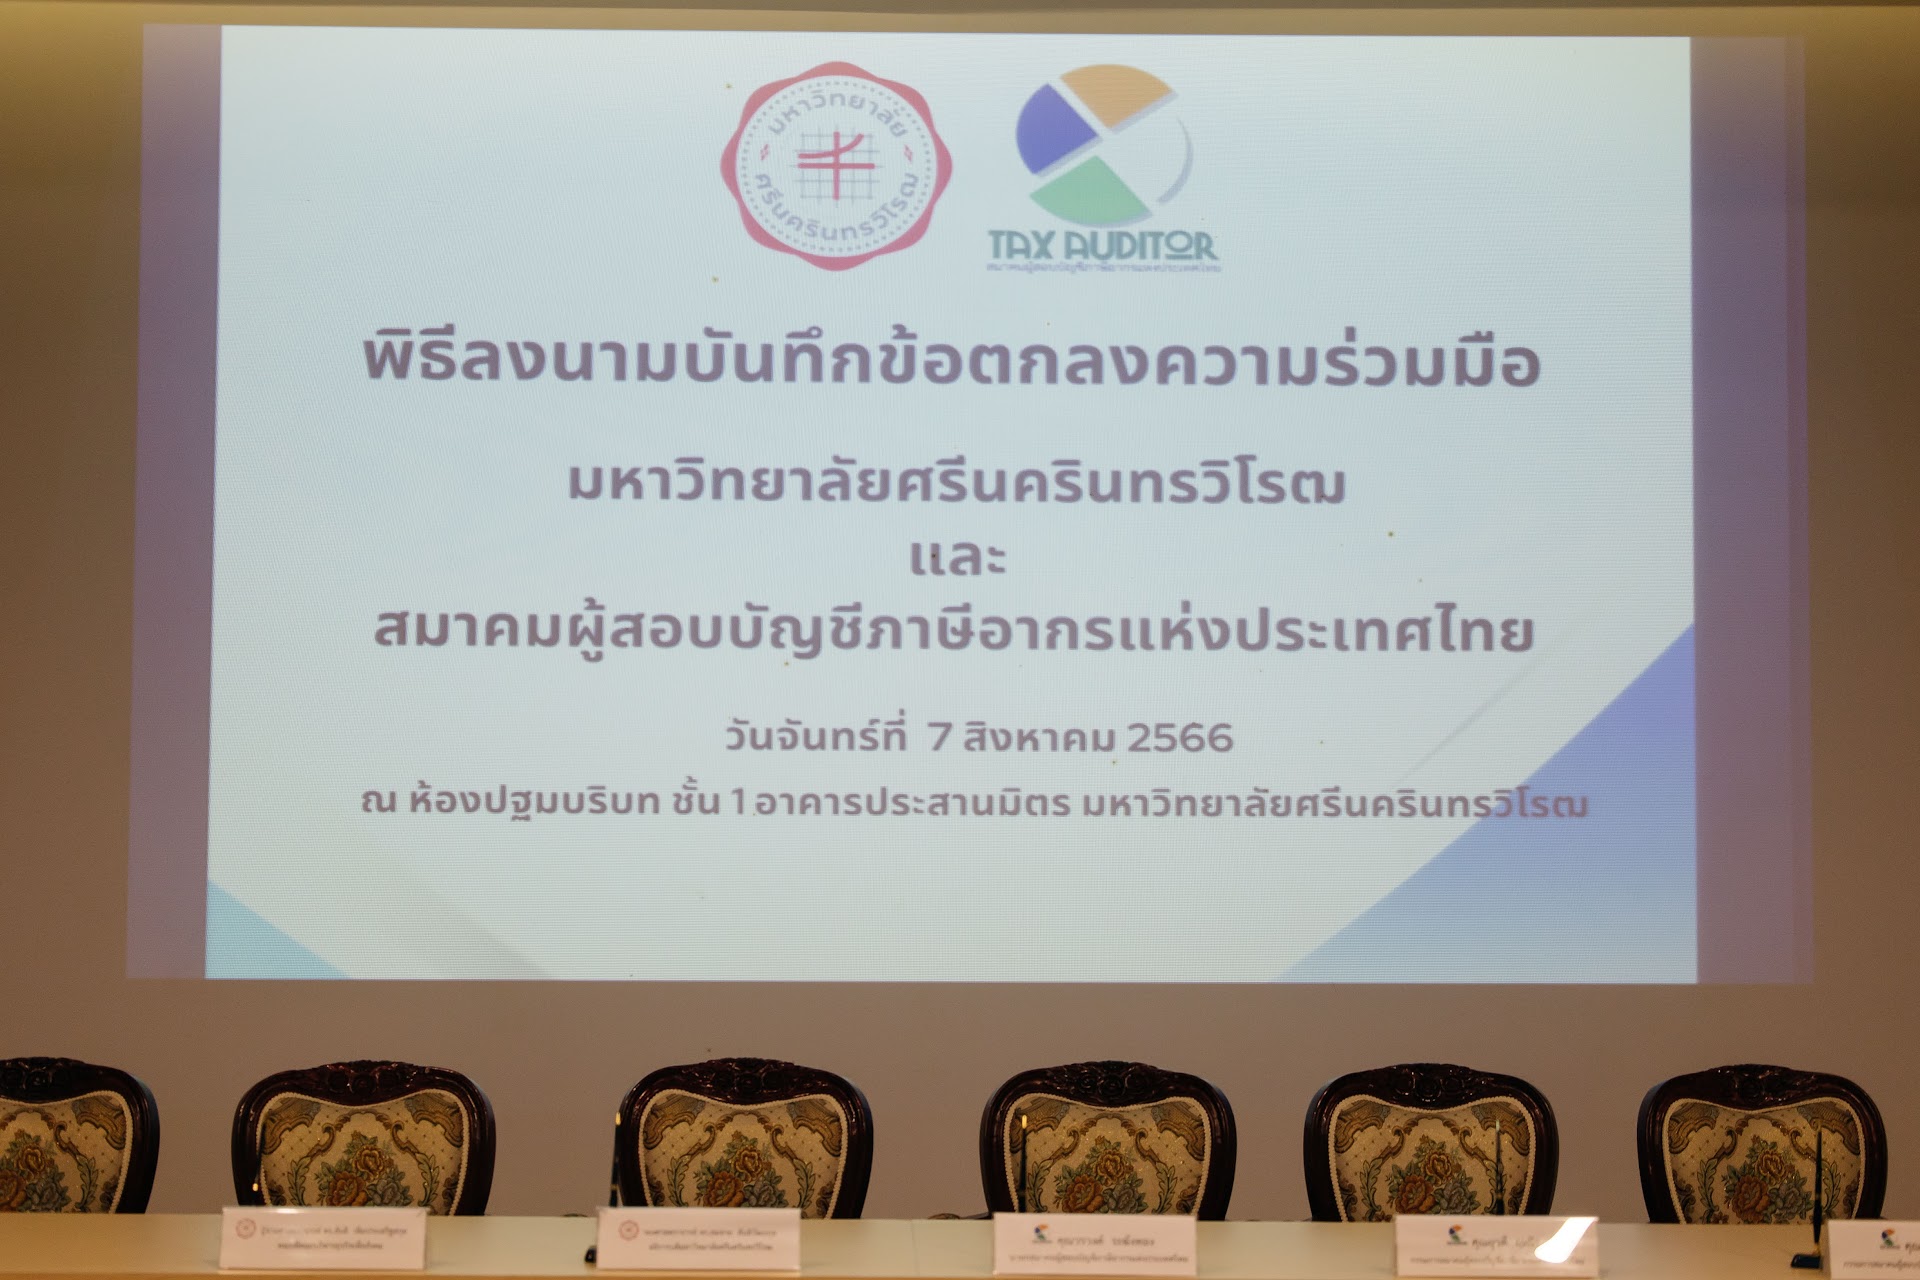 พิธีลงนามบันทึกข้อตกลง ความร่วมมือทางวิชาการระหว่าง มศว กับ สมาคมผู้สอบบัญชีภาษีอากรแห่งประเทศไทย